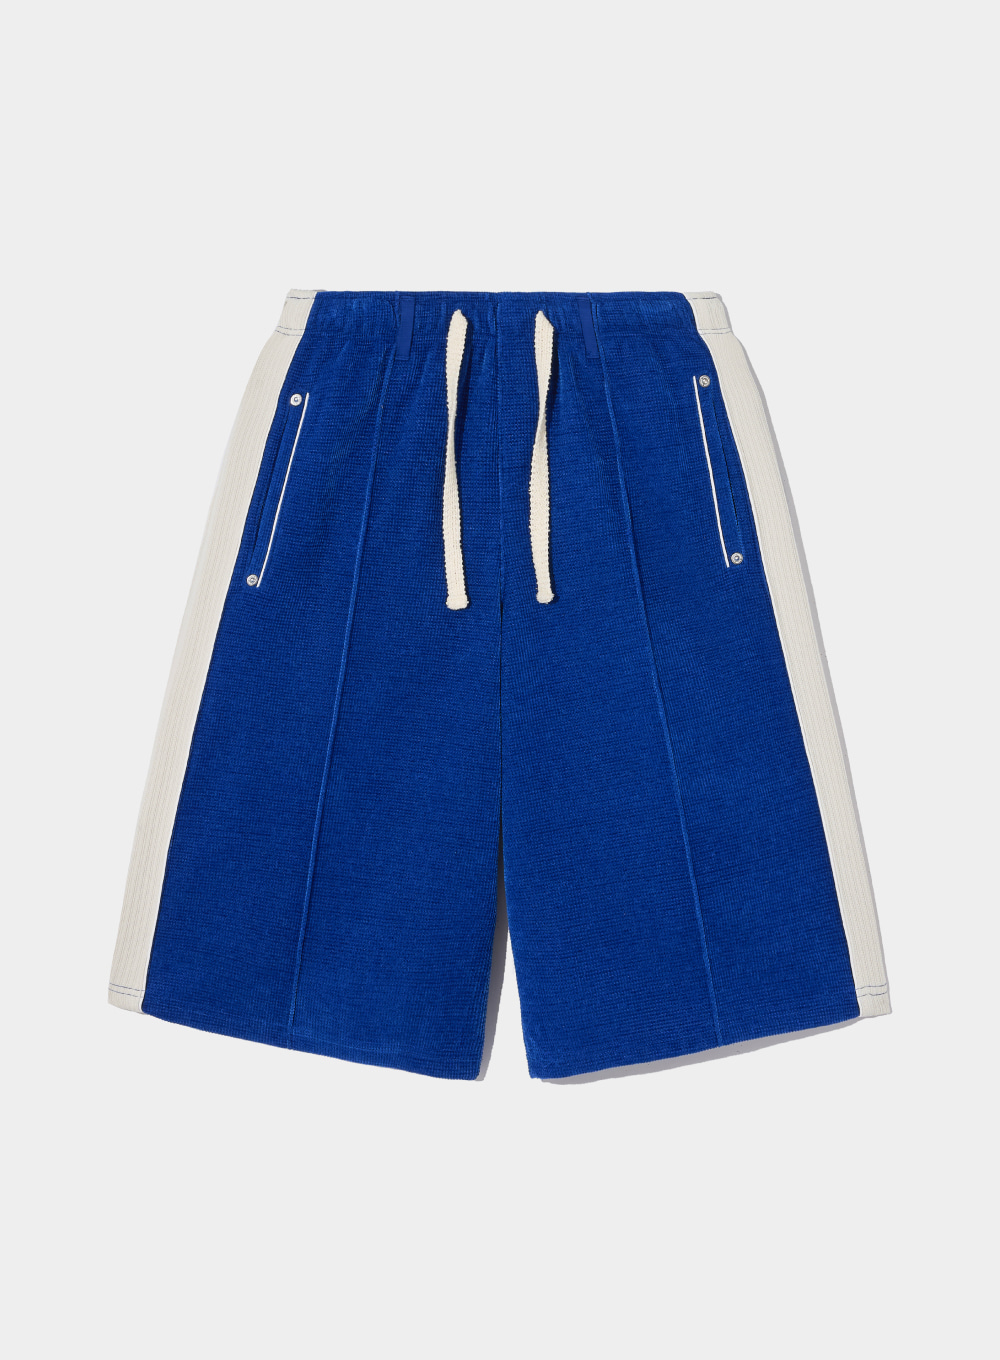 [2월 5일 예약배송]Hazen Velour Bermuda Pants - Resort Blue